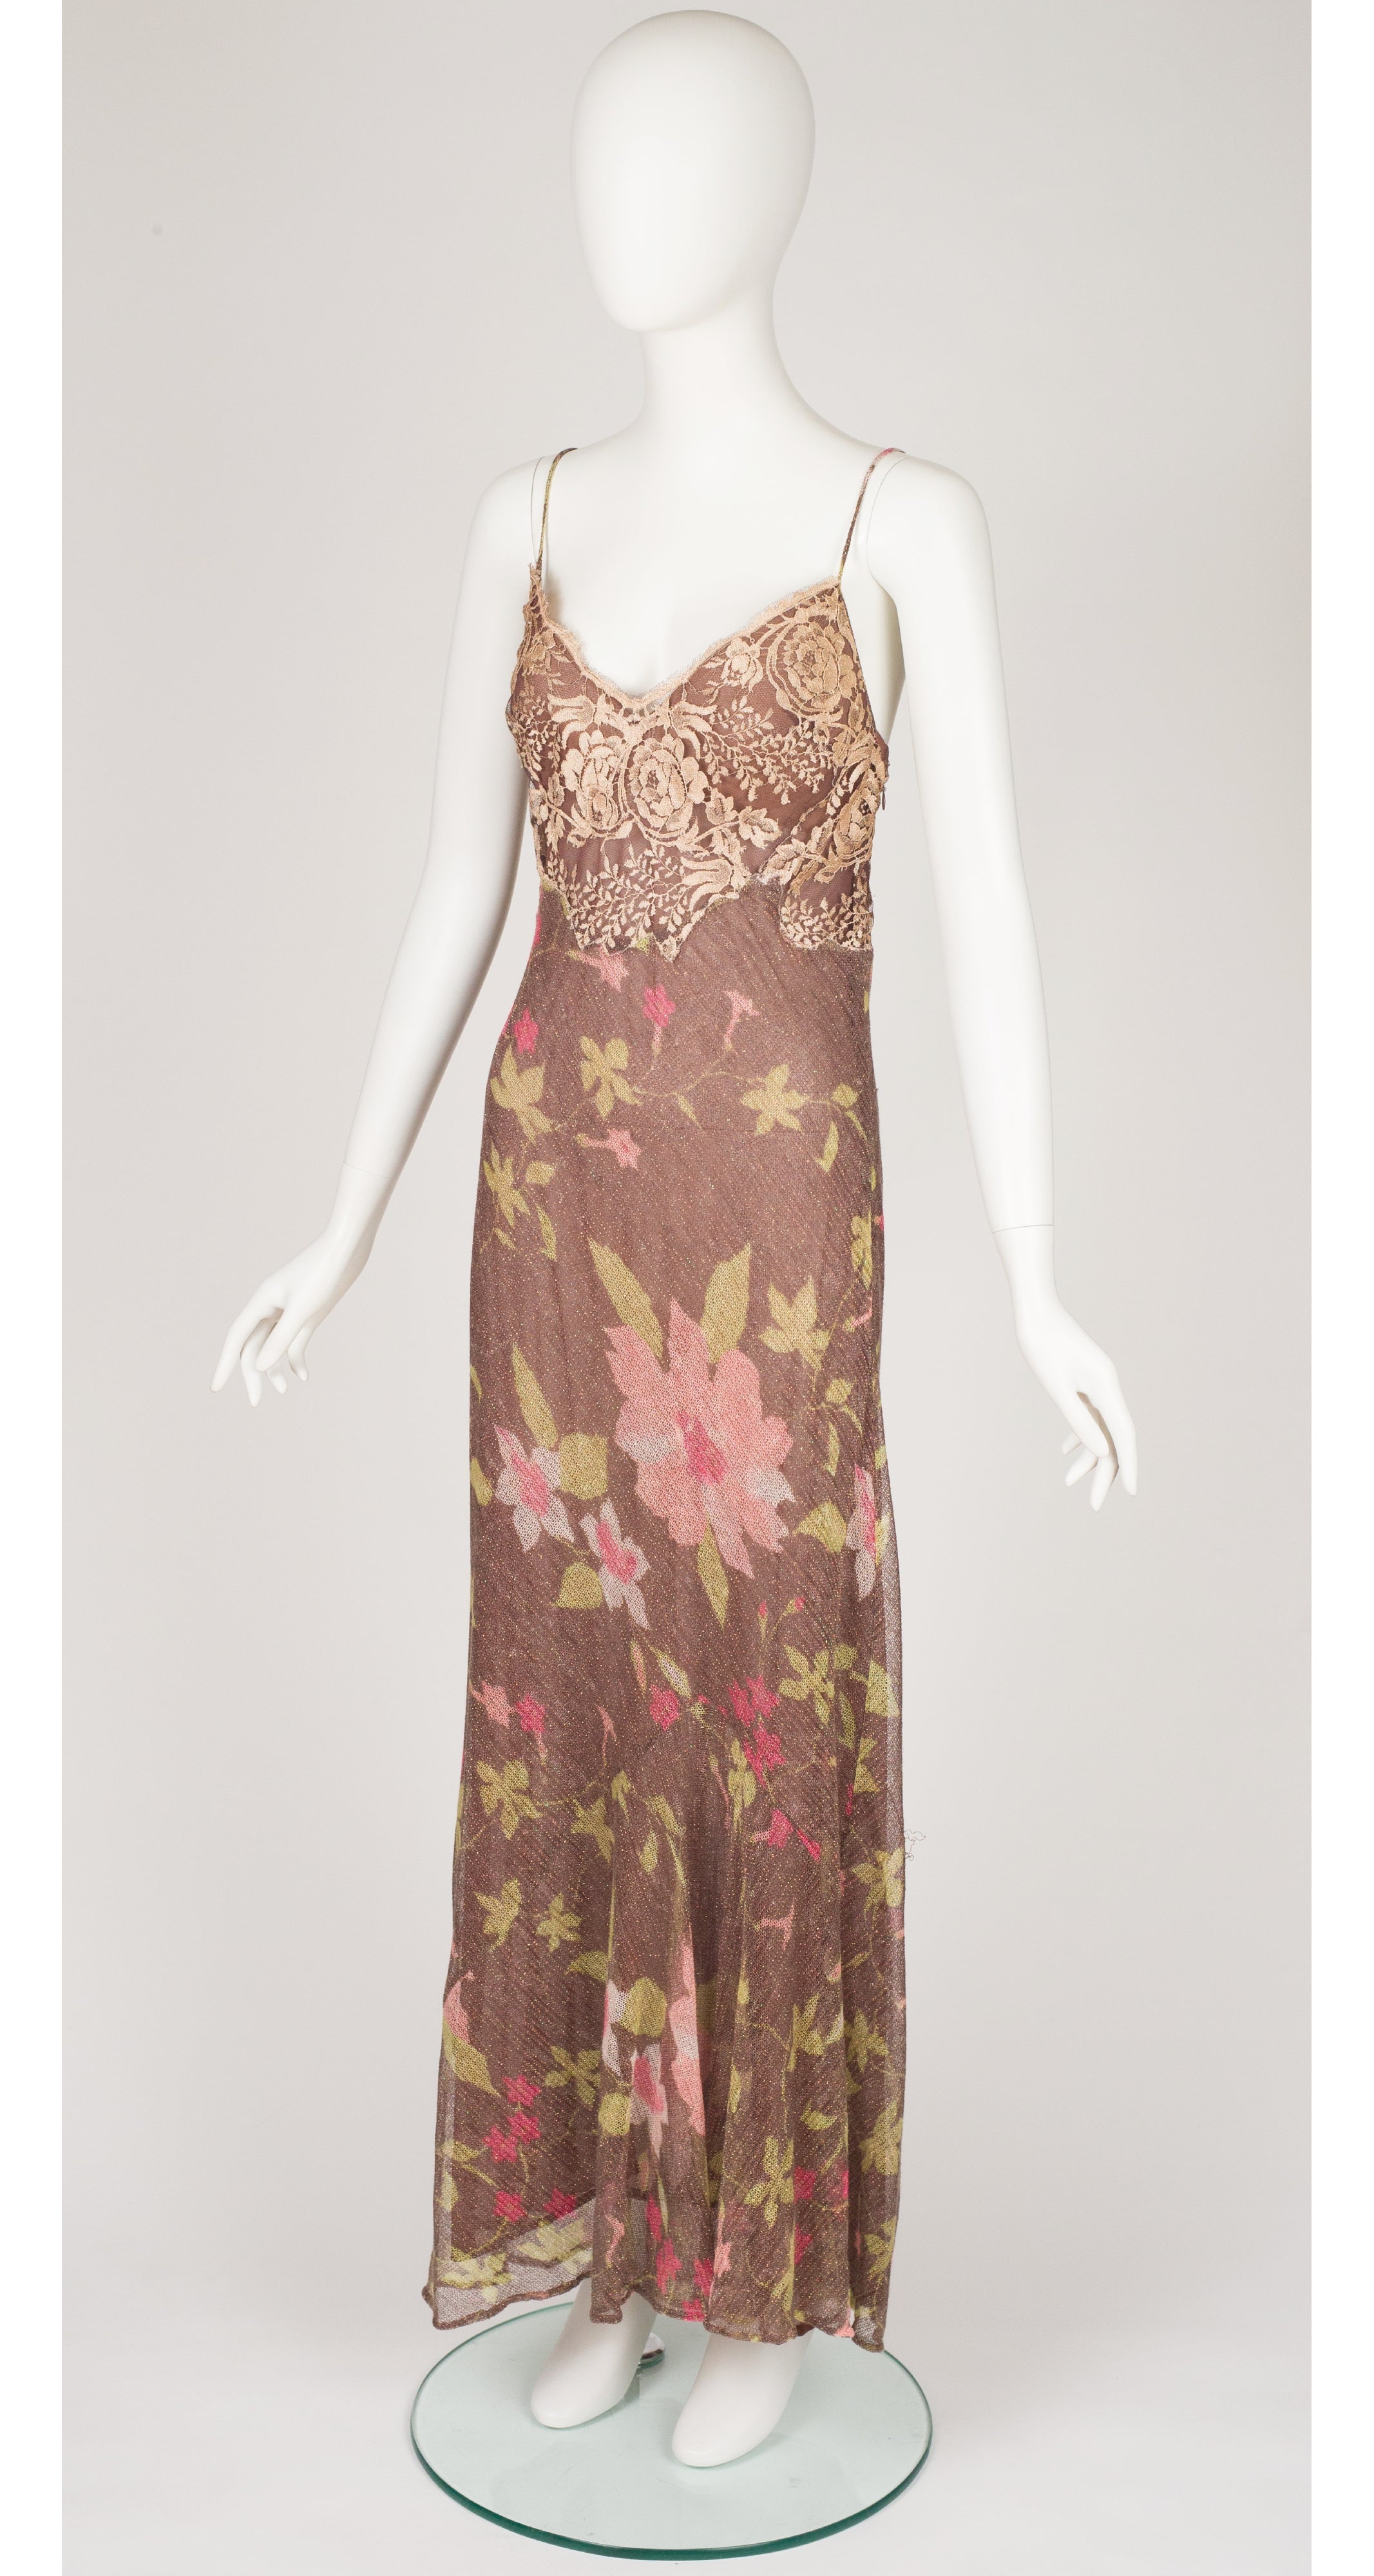 2000s Lace & Floral Lurex Knit Slip Dress